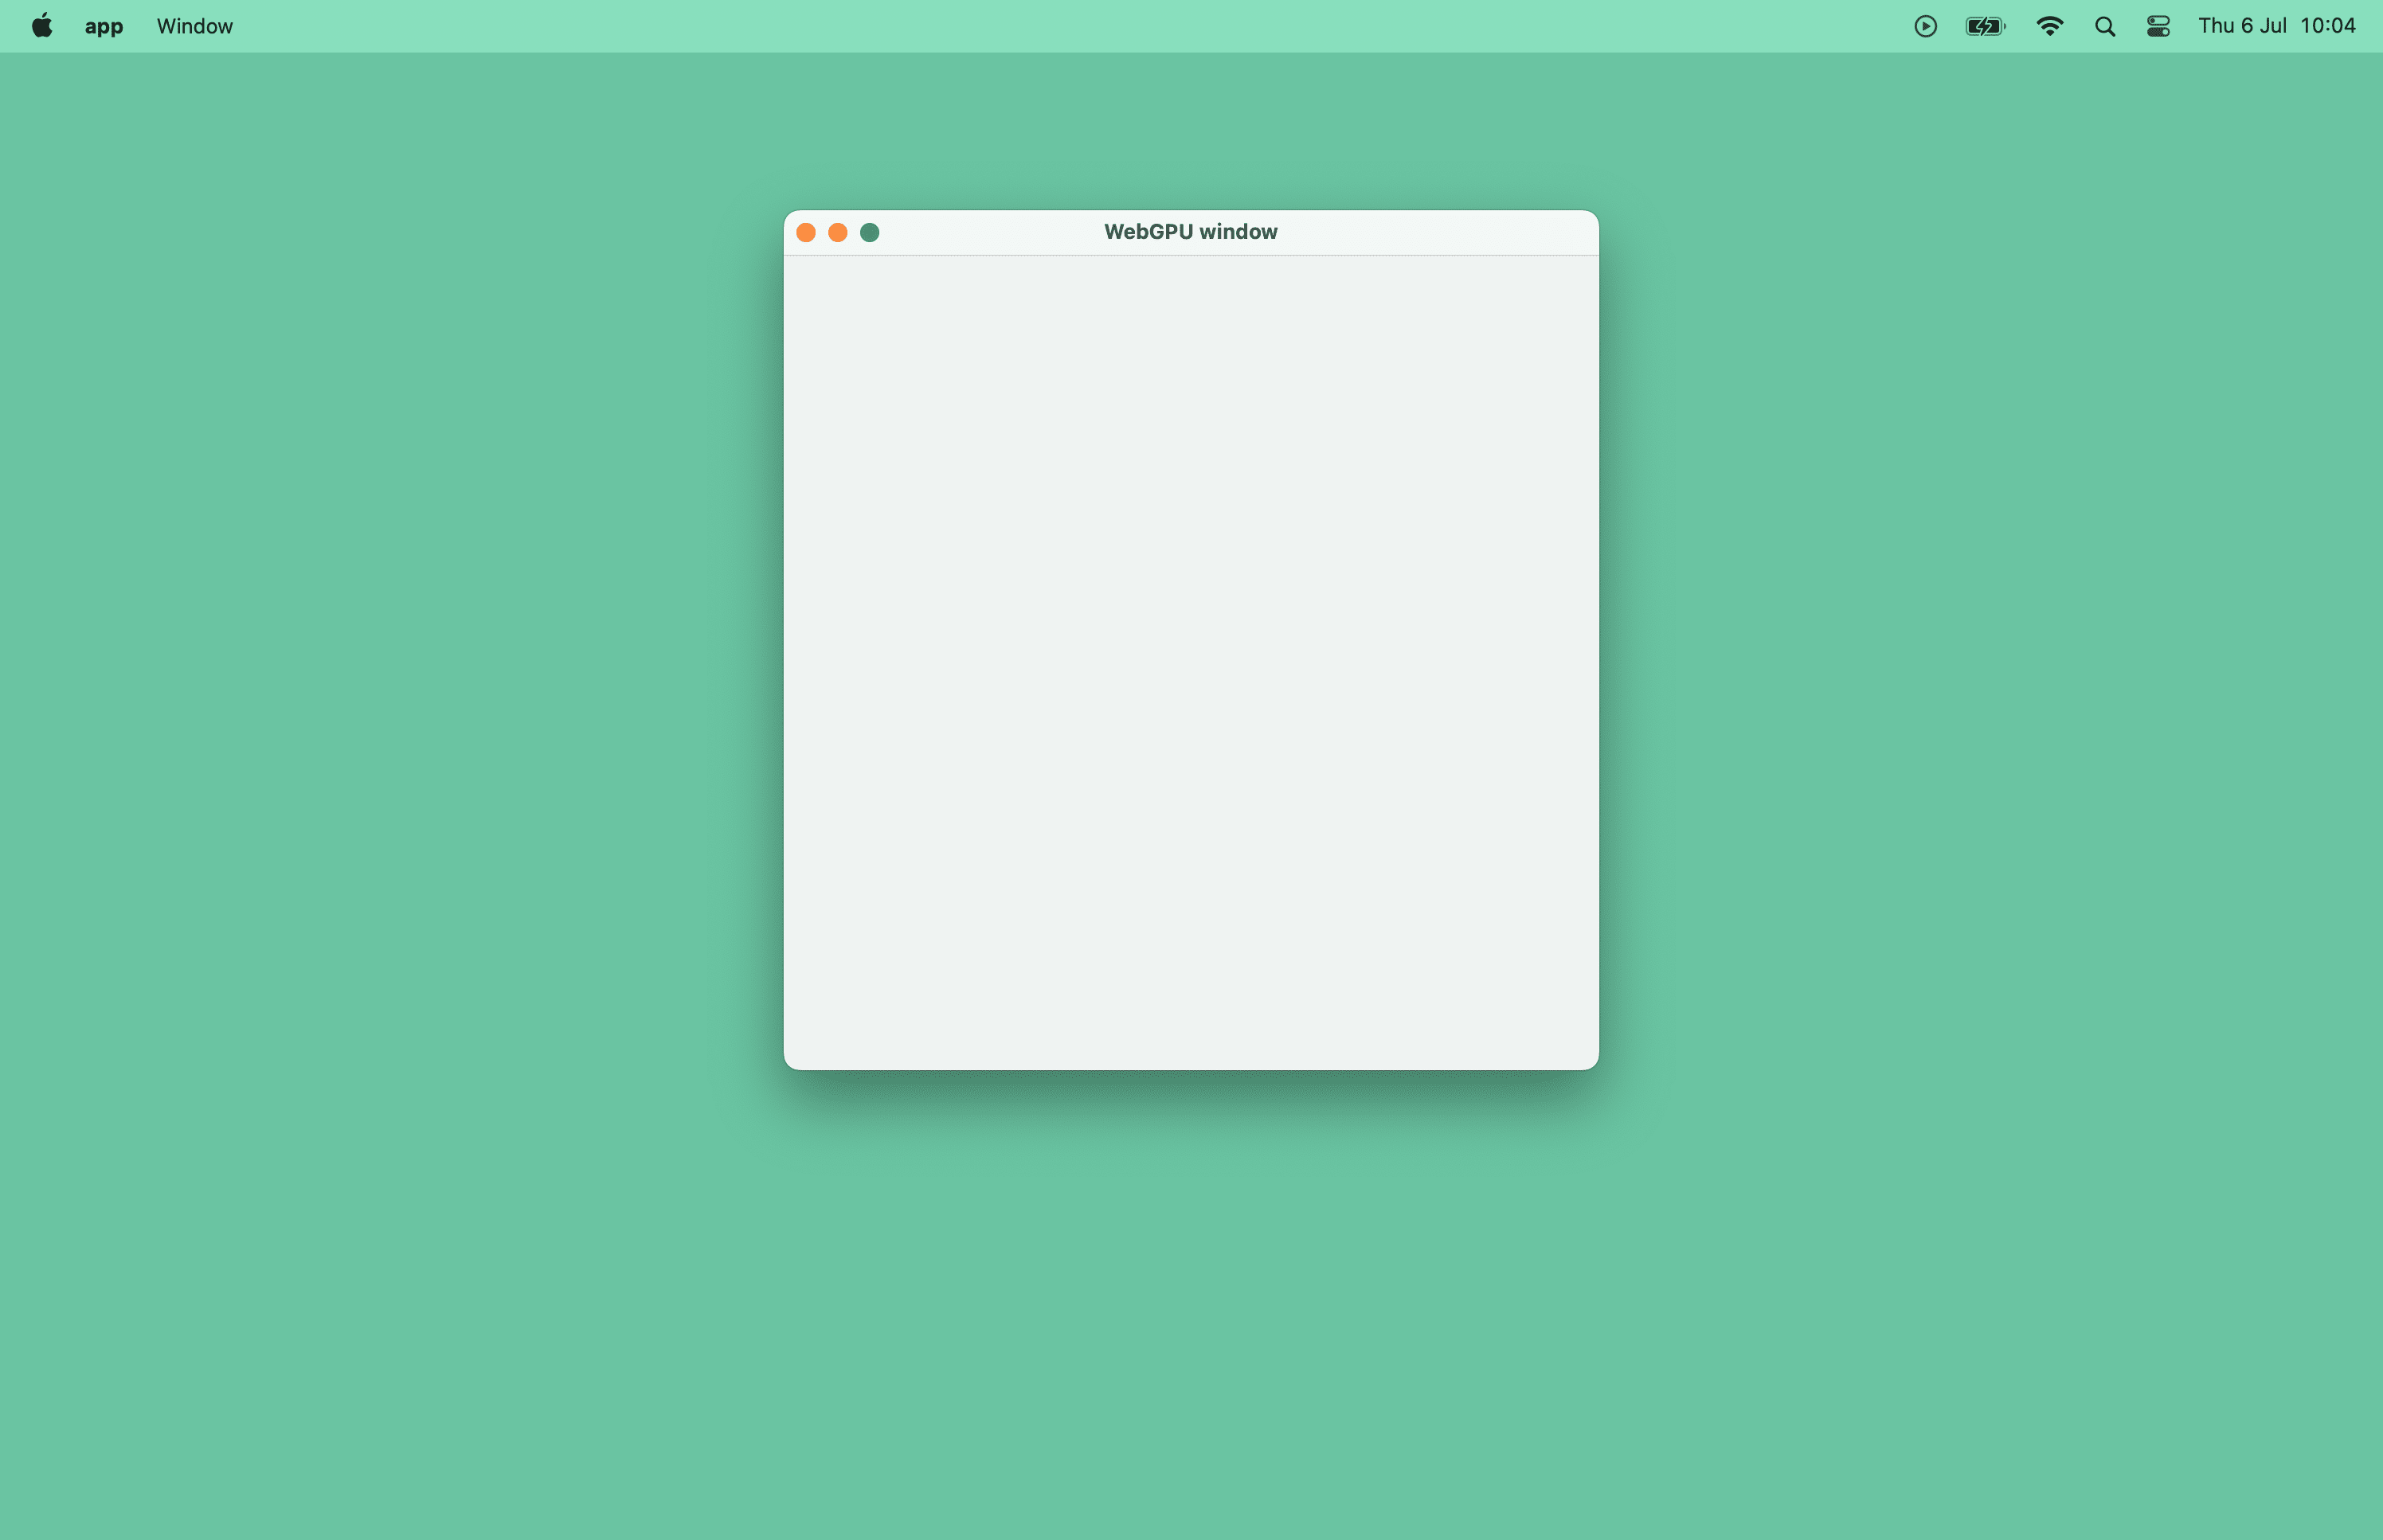 צילום מסך של חלון macOS ריק.